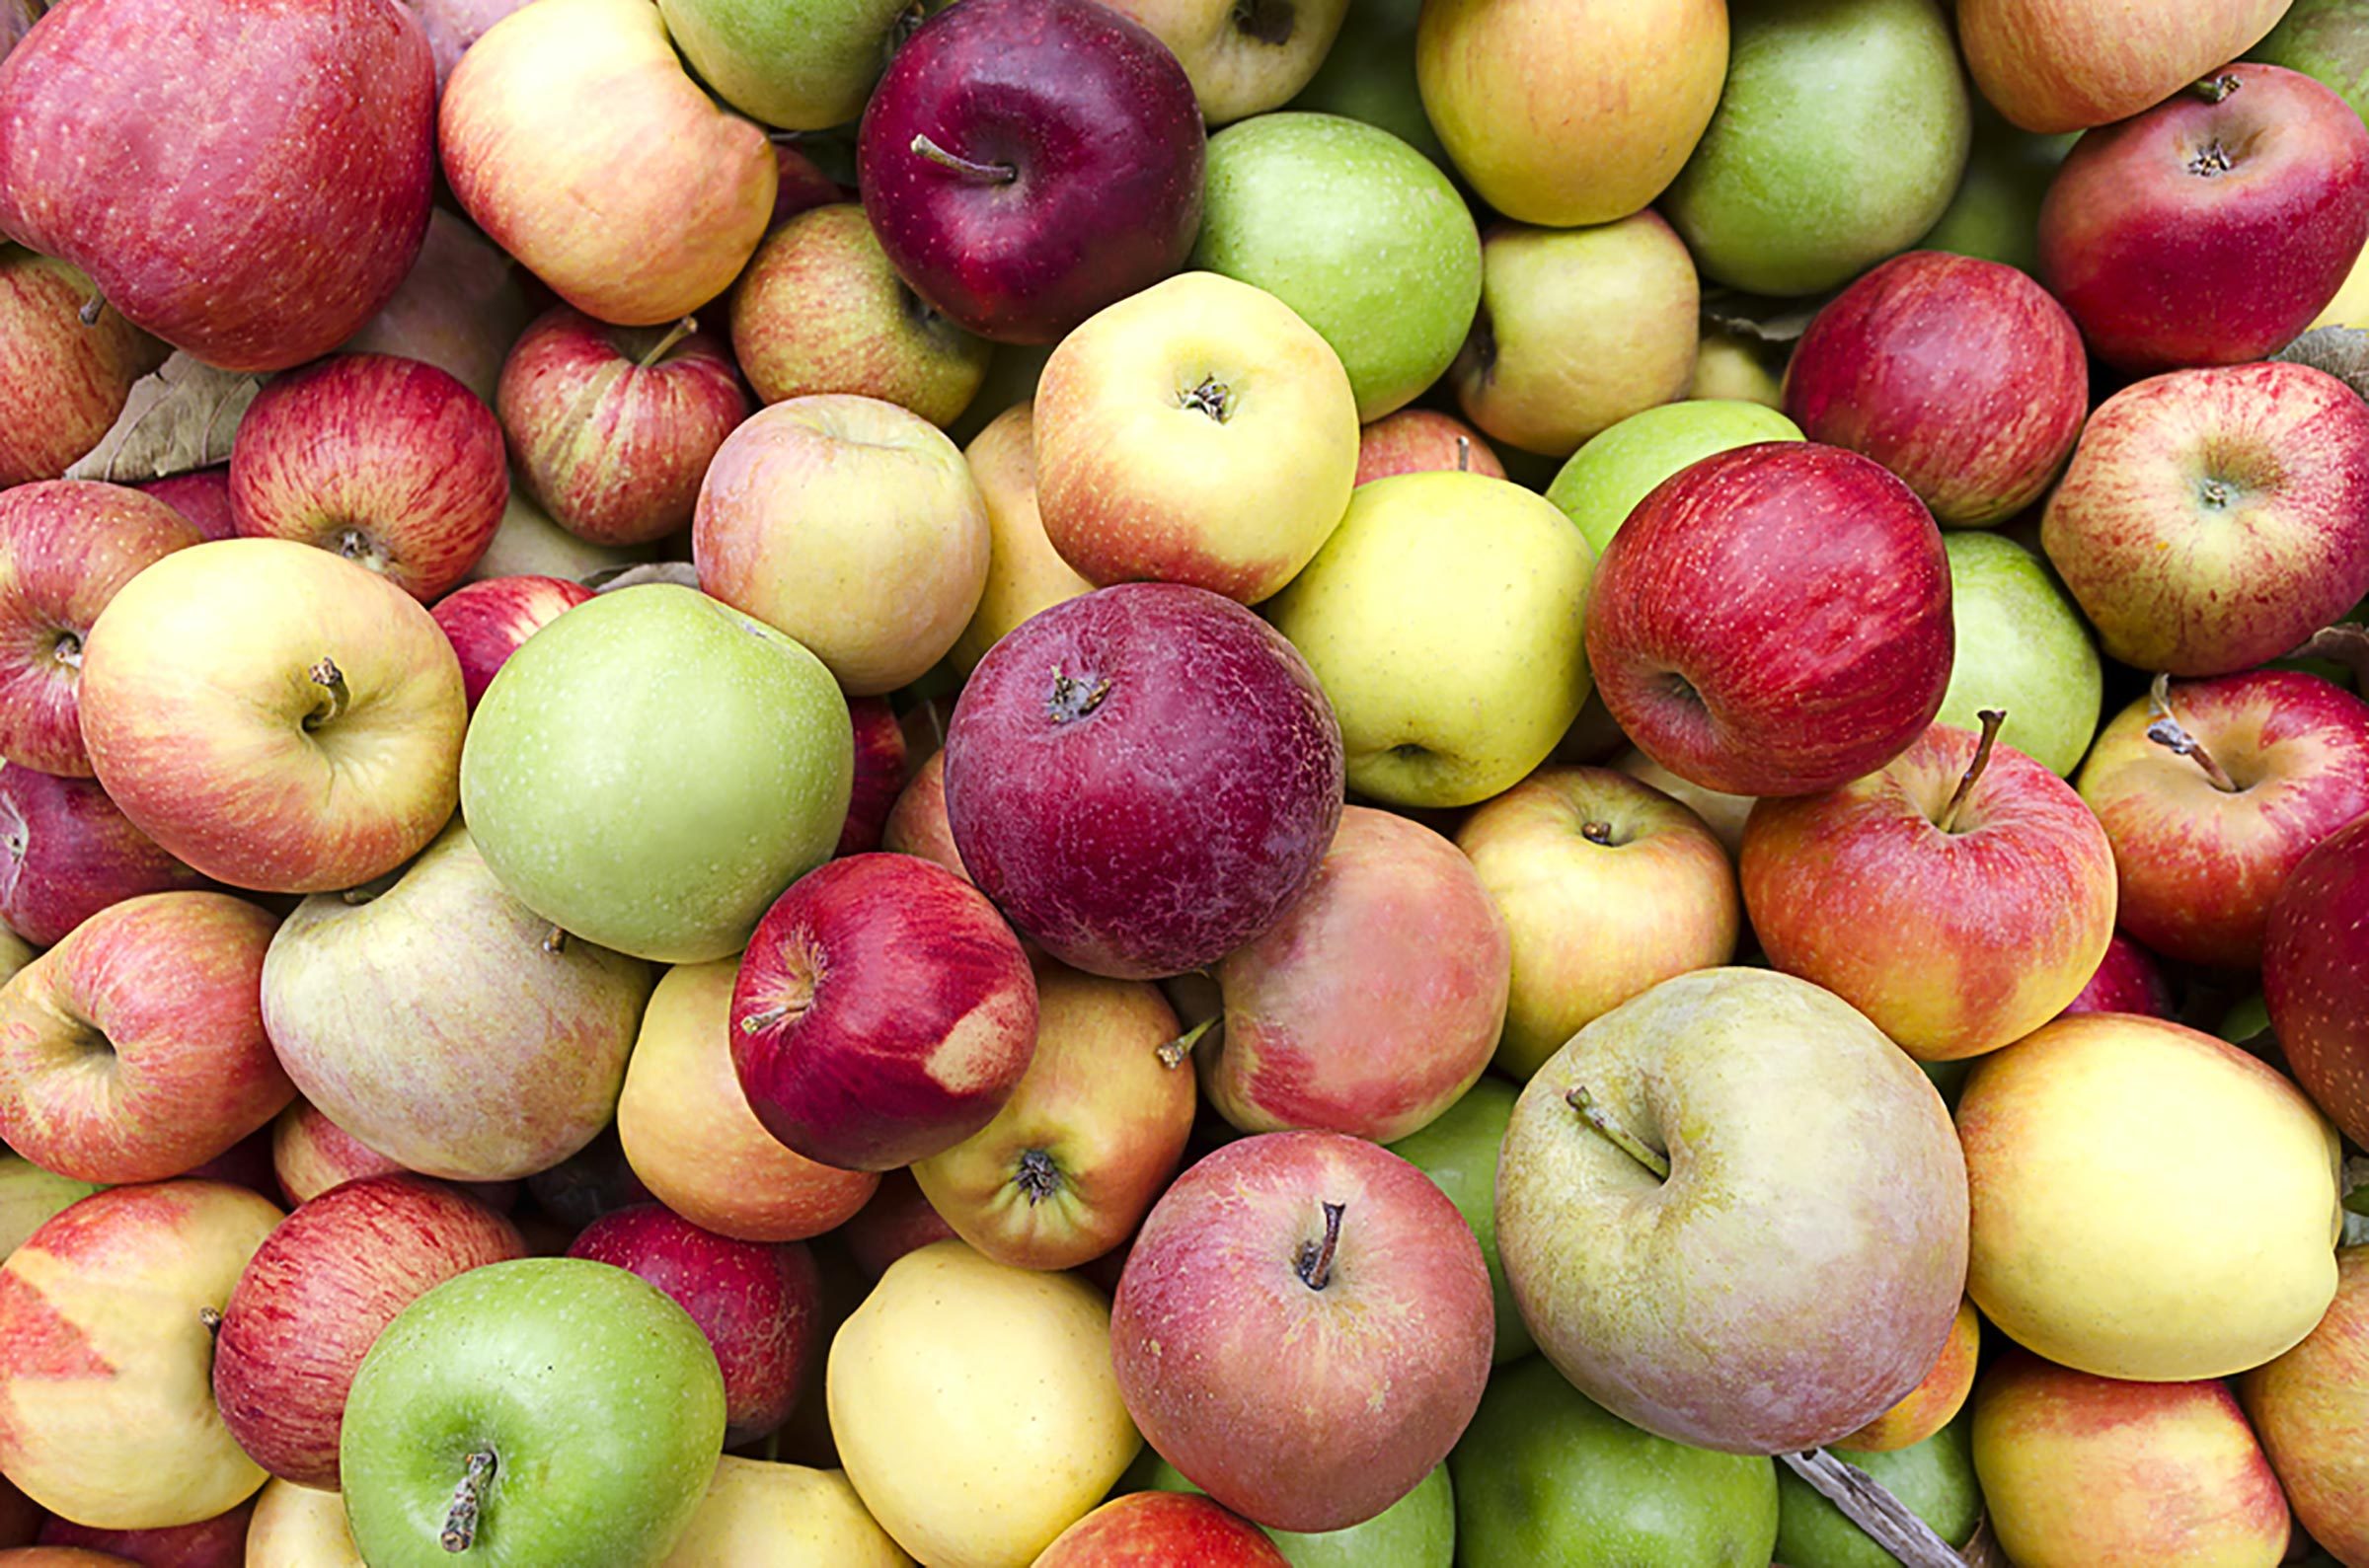 りんご狩りの正しい方法—そしてりんご狩りに行く前に知っておくべき8つのこと 